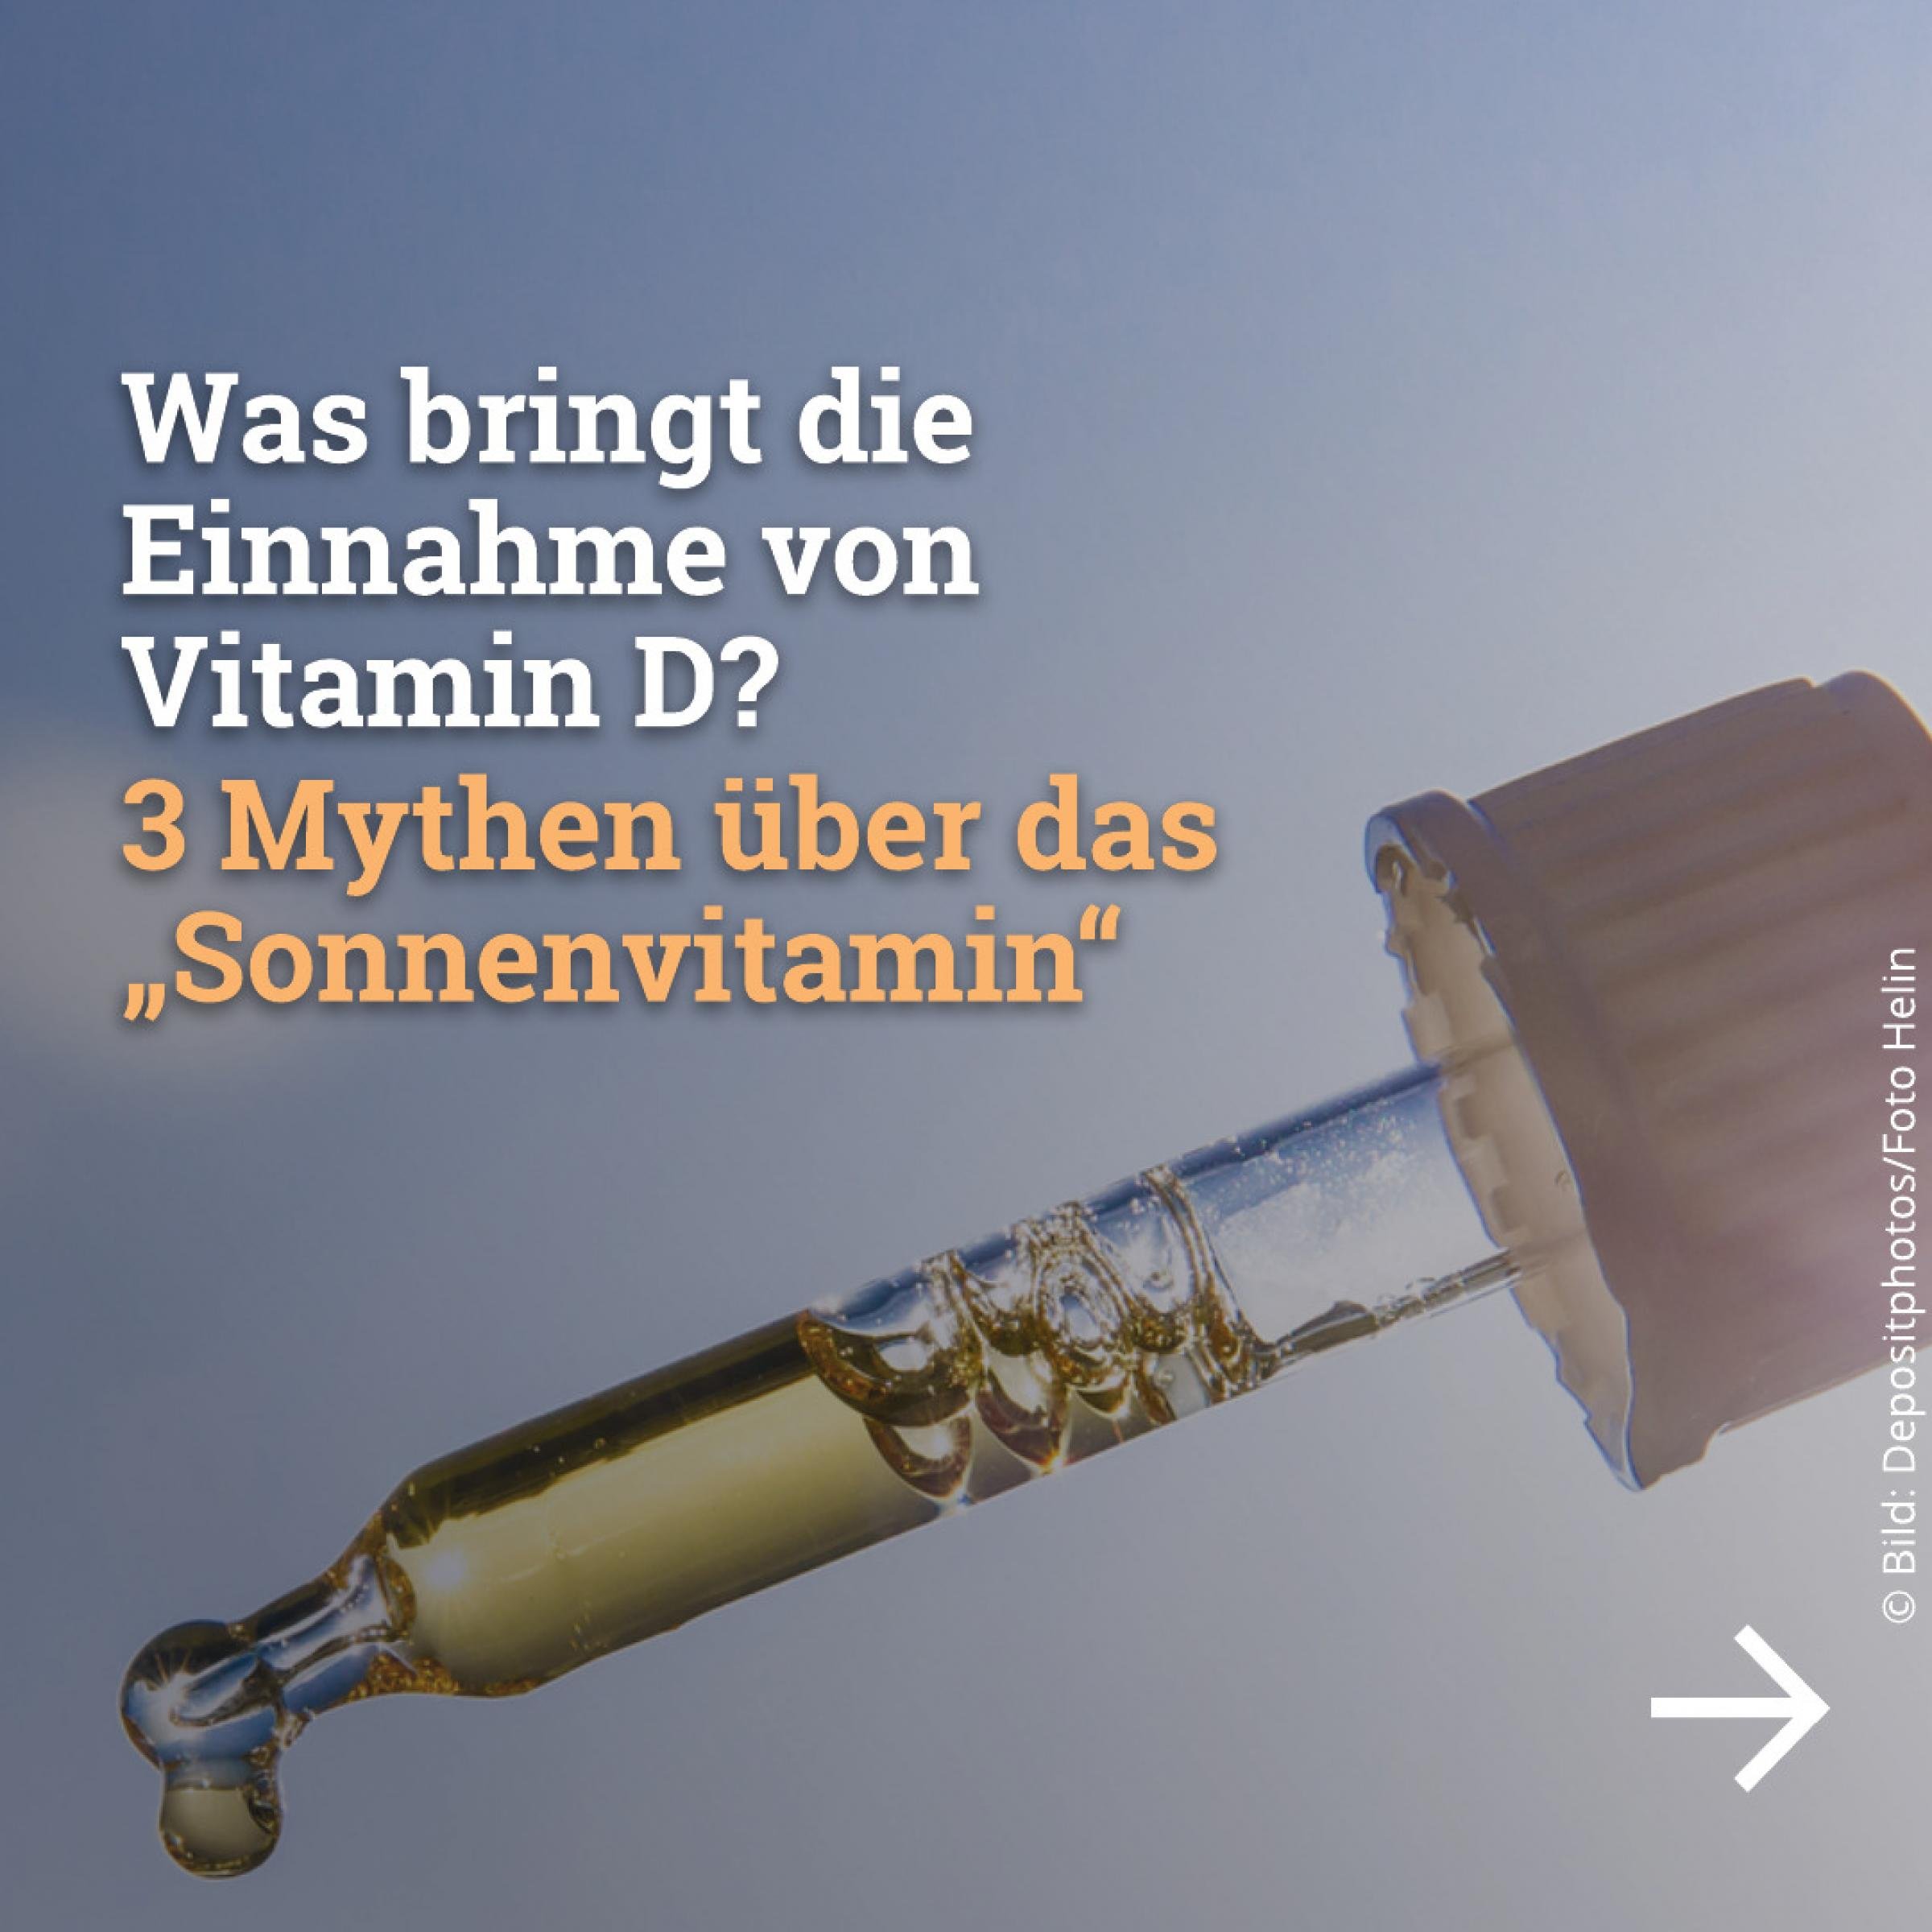 Was bringt die Einnahme von Vitamin D? 3 Mythen über das „Sonnenvitamin“